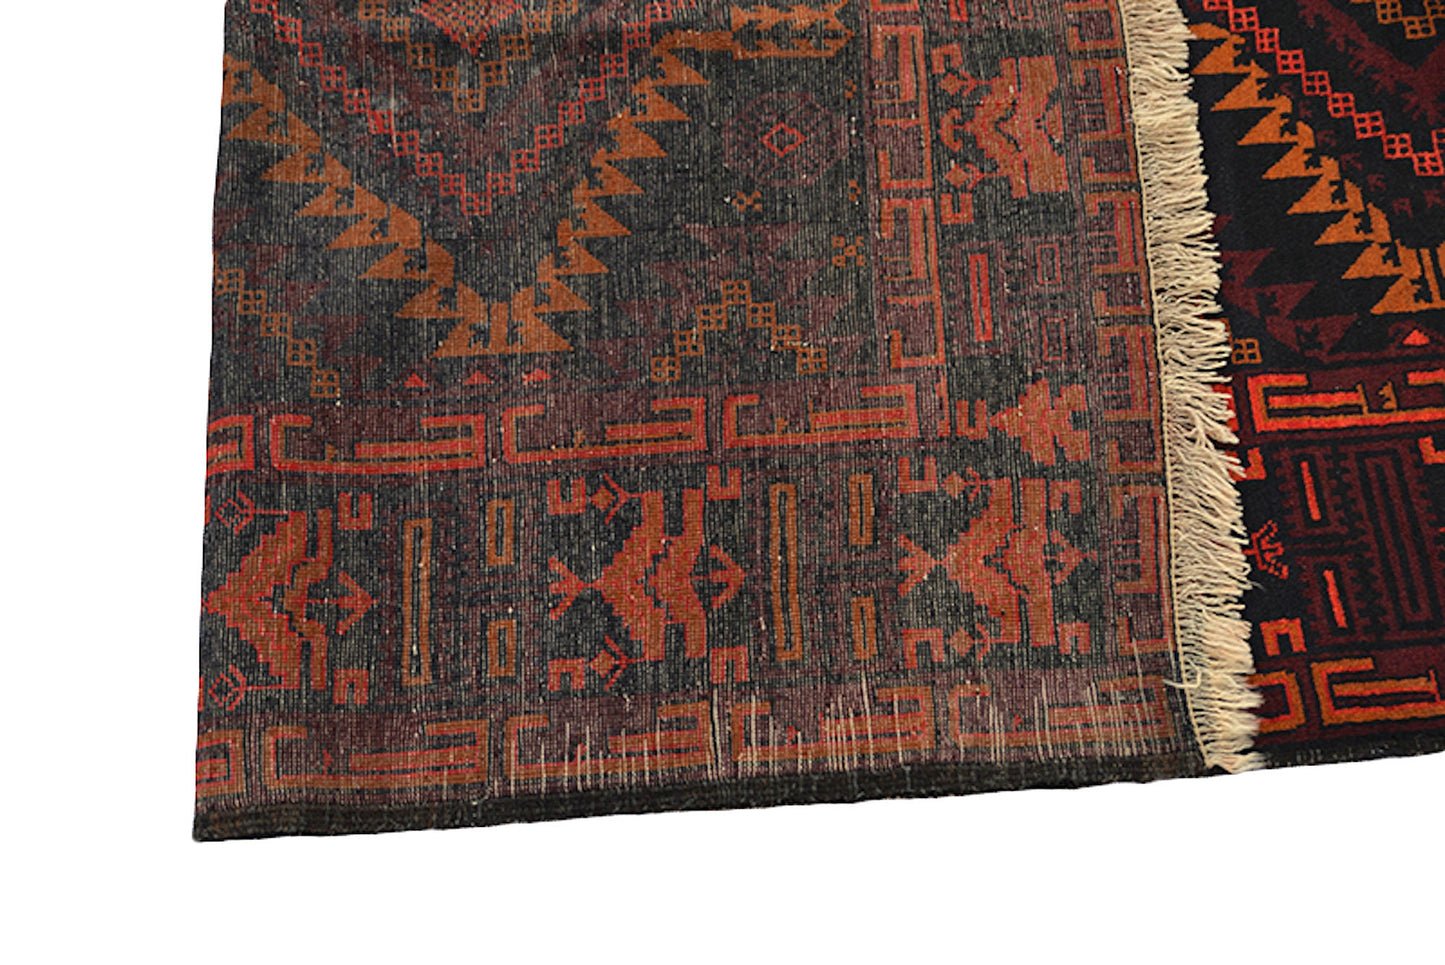 Black Handmade Rug | Wool Rug | 4 x 7 Rug | Orange Black Rug | Geometric Tribal Rug | Vintage Afghan Rug